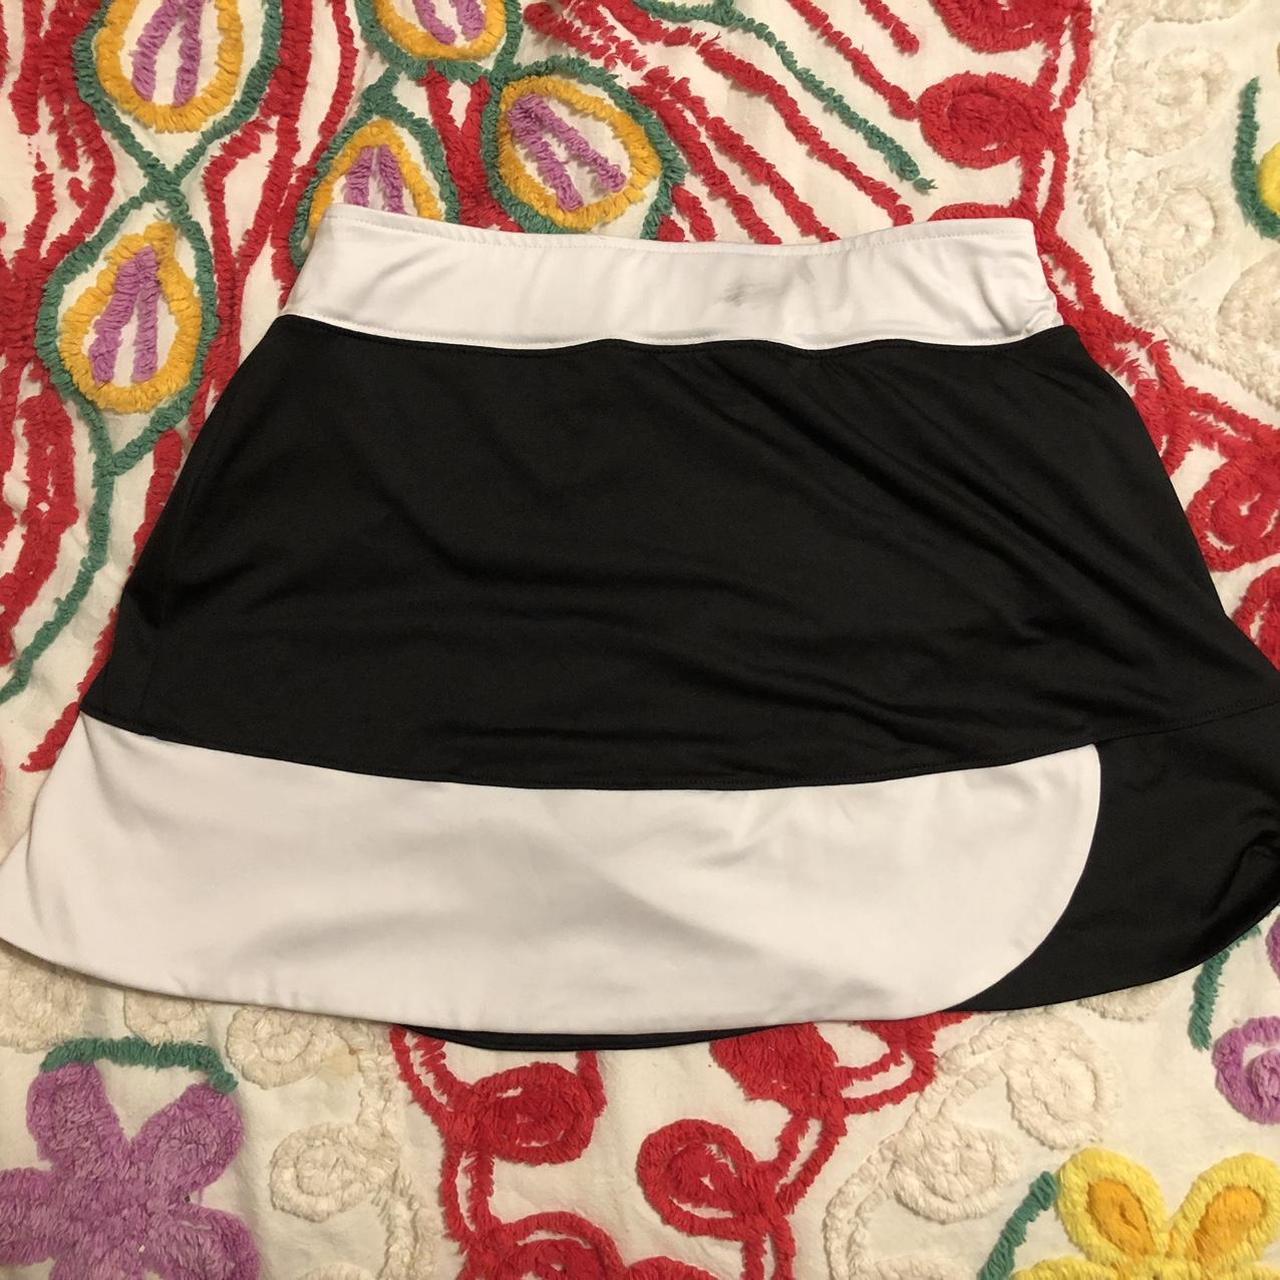 Slazenger Women's Black and White Skirt (3)